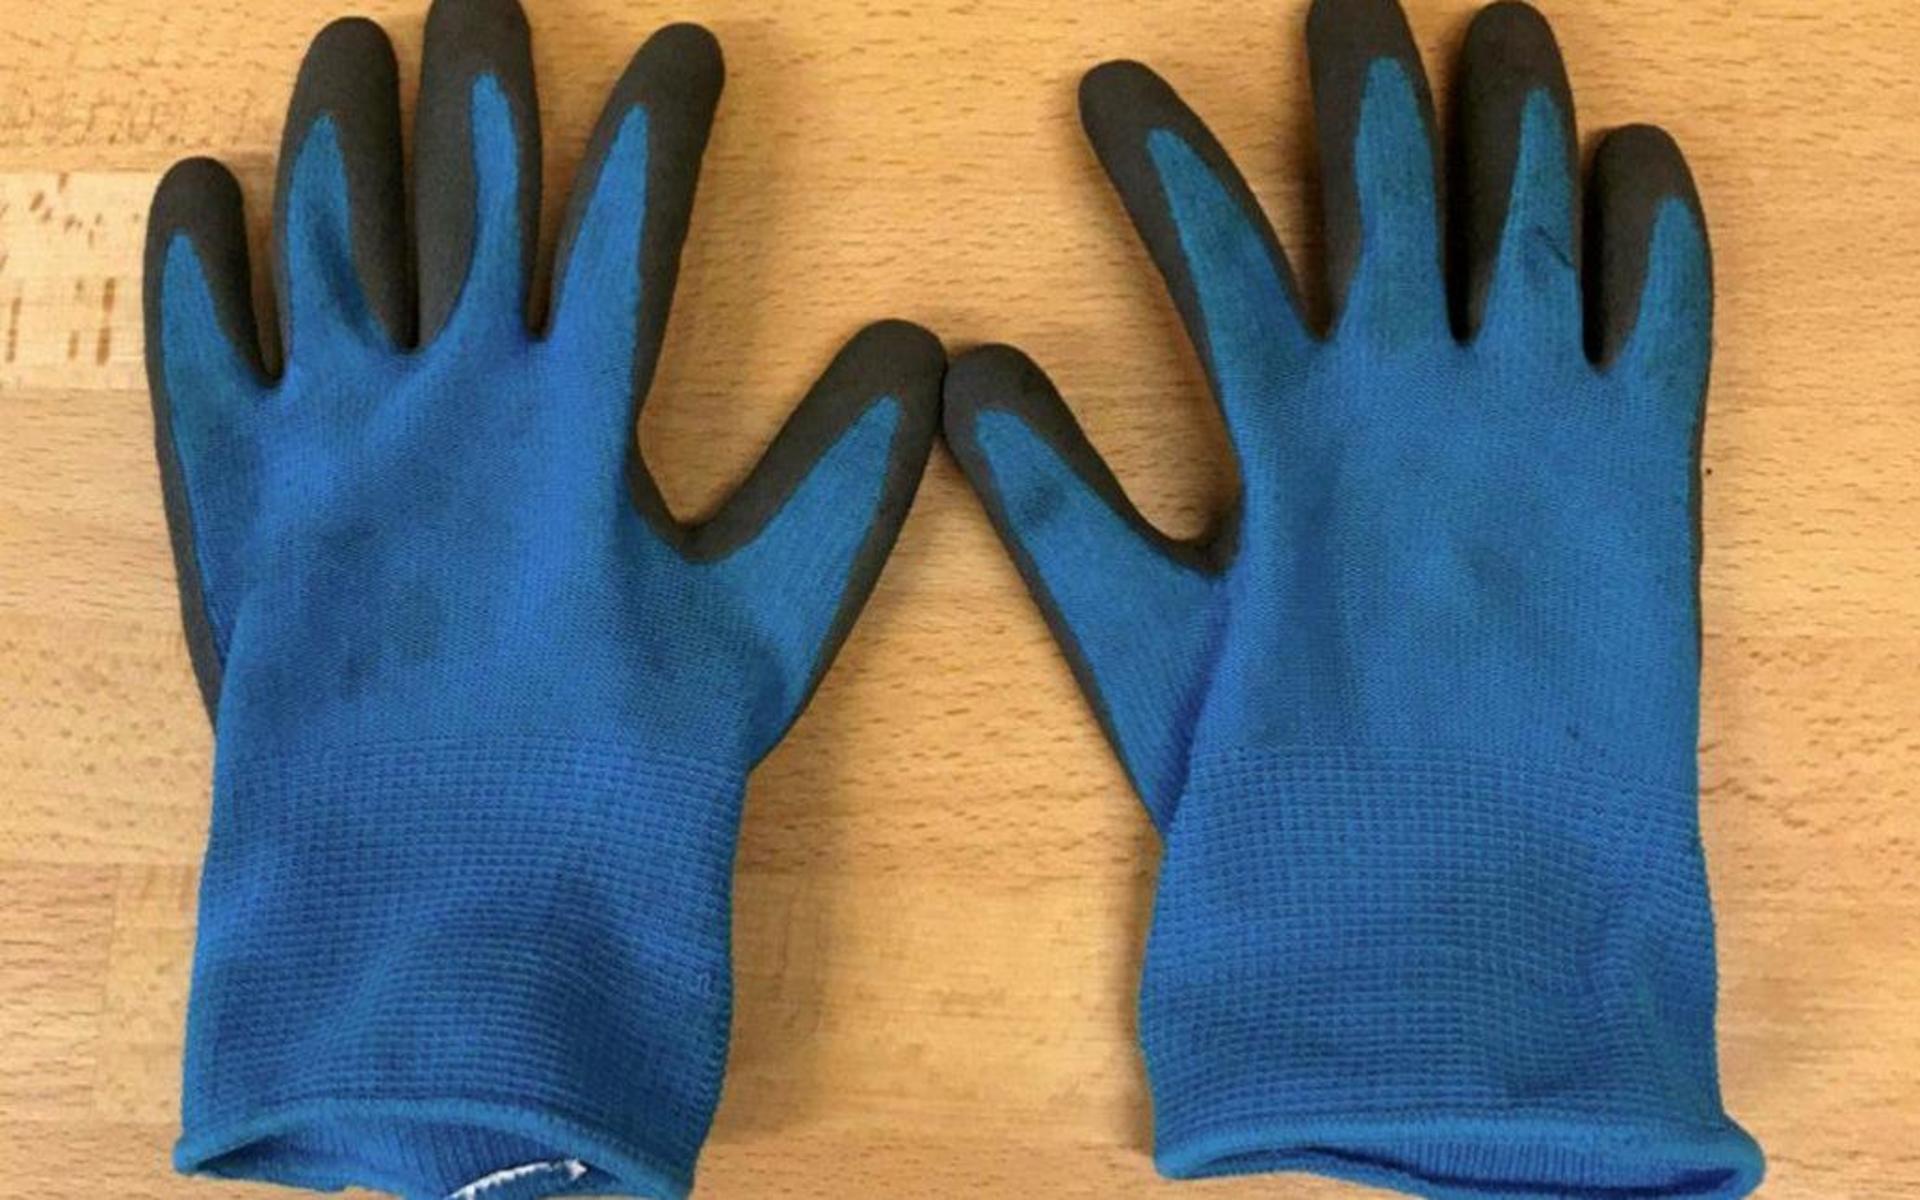 Handskarna som den misstänkta mannen hade på sig när han kom in på restaurangen. Enligt ett vittne höll han händerna för ansiktet, enligt honom själv använda han handskar på grund av corona.